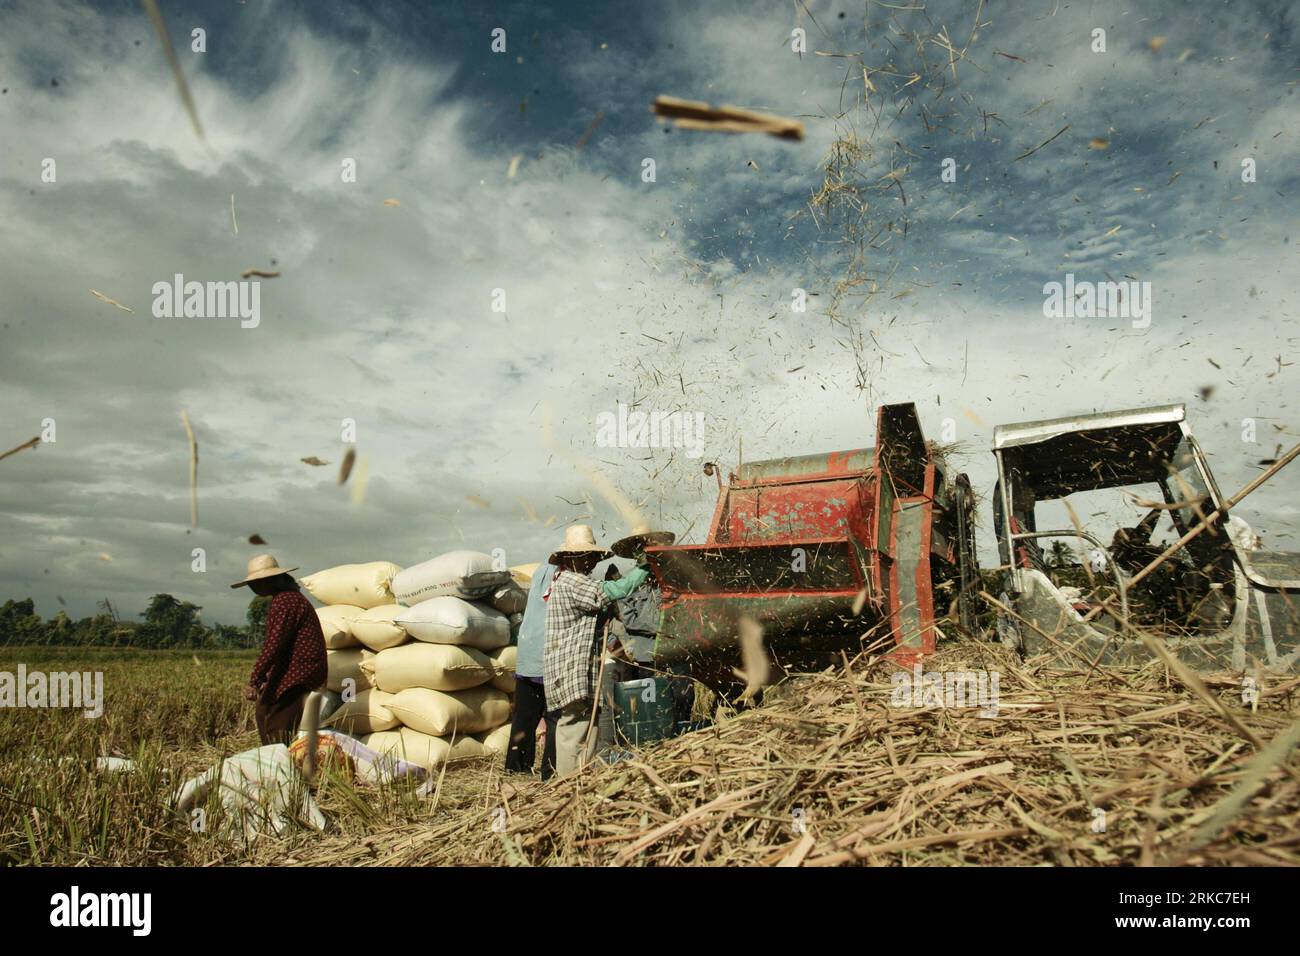 Bildnummer: 54686108 Datum: 29.11.2010 Copyright: Imago/Xinhua (101130) -- BULACAN, 30 de noviembre de 2010 (Xinhua) -- Los agricultores cargan sus cultivos recién cosechados a un trazador antes de moler en una granja en la provincia de Bulacan, al norte de la capital Manila, Filipinas, 29 de noviembre de 2010. Los agricultores agradecen que puedan cosechar justo a tiempo y con la ayuda de la tecnología agrícola moderna y las técnicas agrícolas. Bulacan es uno de los mayores productores de arroz para la seguridad alimentaria nacional en el país. (Xinhua/Jon Fabrigar)(axy) FILIPINAS-ARROZ-COSECHA PUBLICATIONxNOTxINxCHN Wirtschaft kbdig xkg 2 Foto de stock